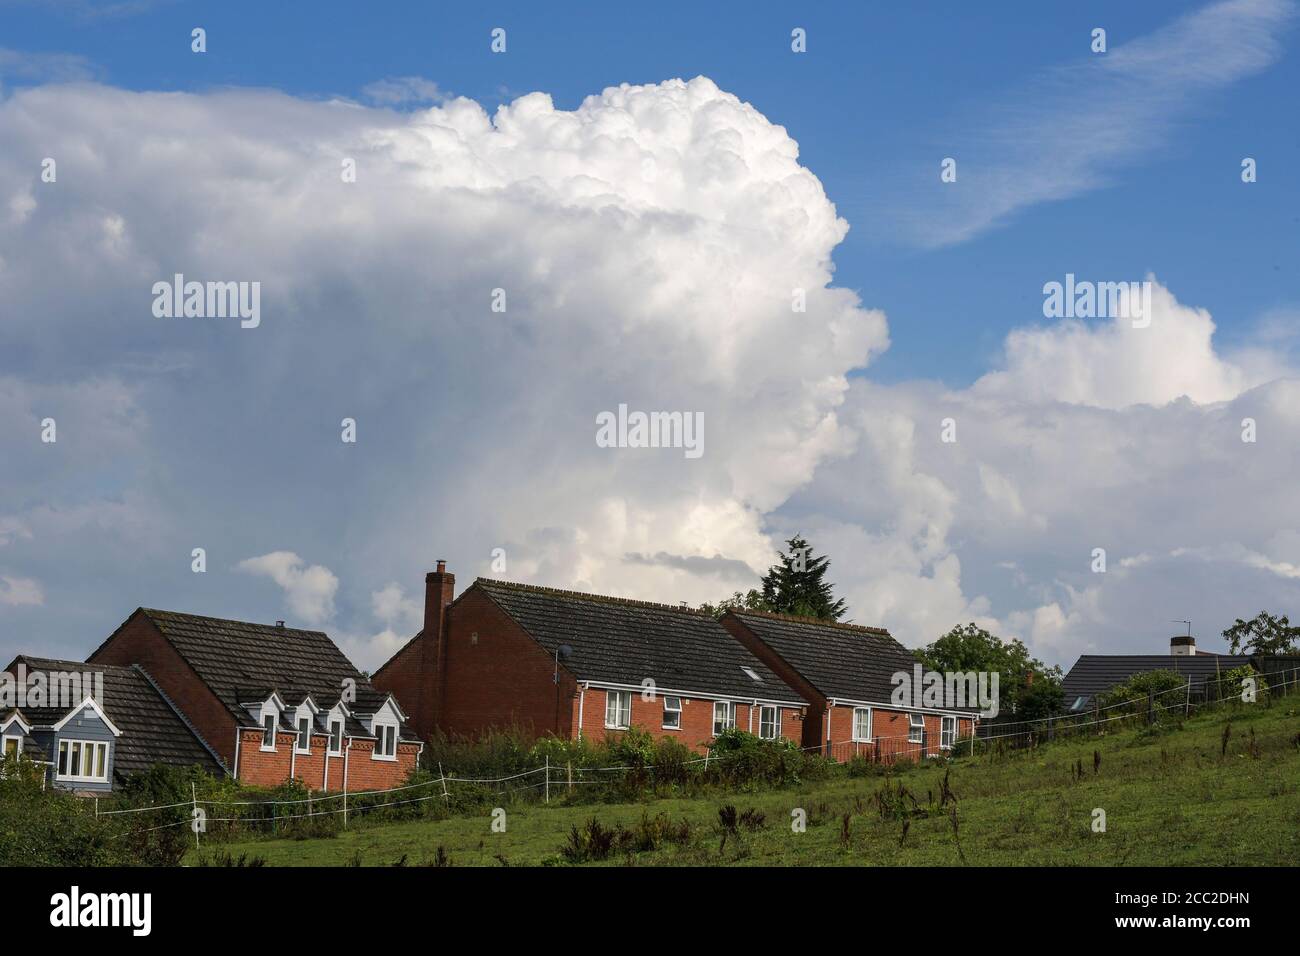 Romsley, Worcestershire, 17. August 2020. Am Montagnachmittag ragen dramatische Wolken über den Häusern in Romsley, Worcestershire, während sich während des heißen Wetters Donner und Blitze weiter formten. Sintflutartige Regenfälle haben die Region getroffen, dürften sich aber in der kommenden Woche beruhigen. Kredit: Sam Holiday/Alamy Live Nachrichten Stockfoto